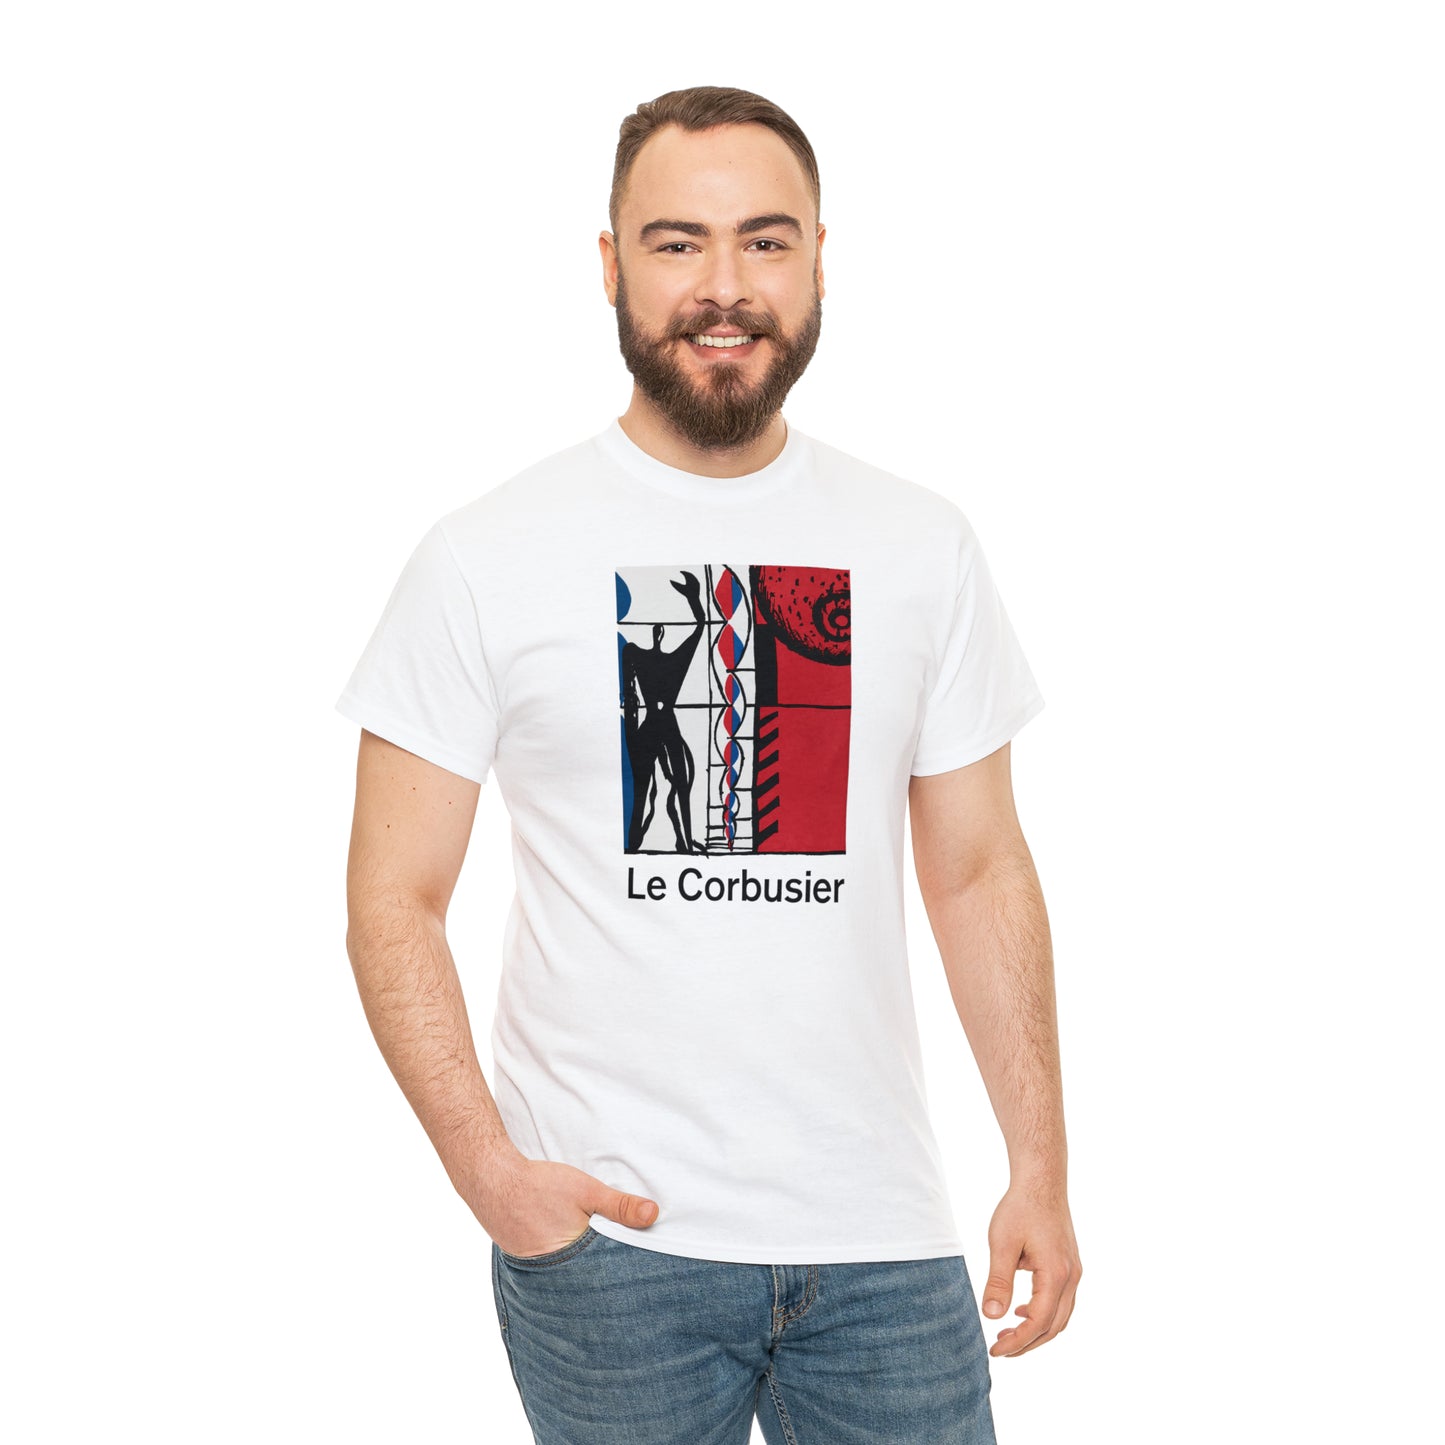 Le Corbusier T-Shirt